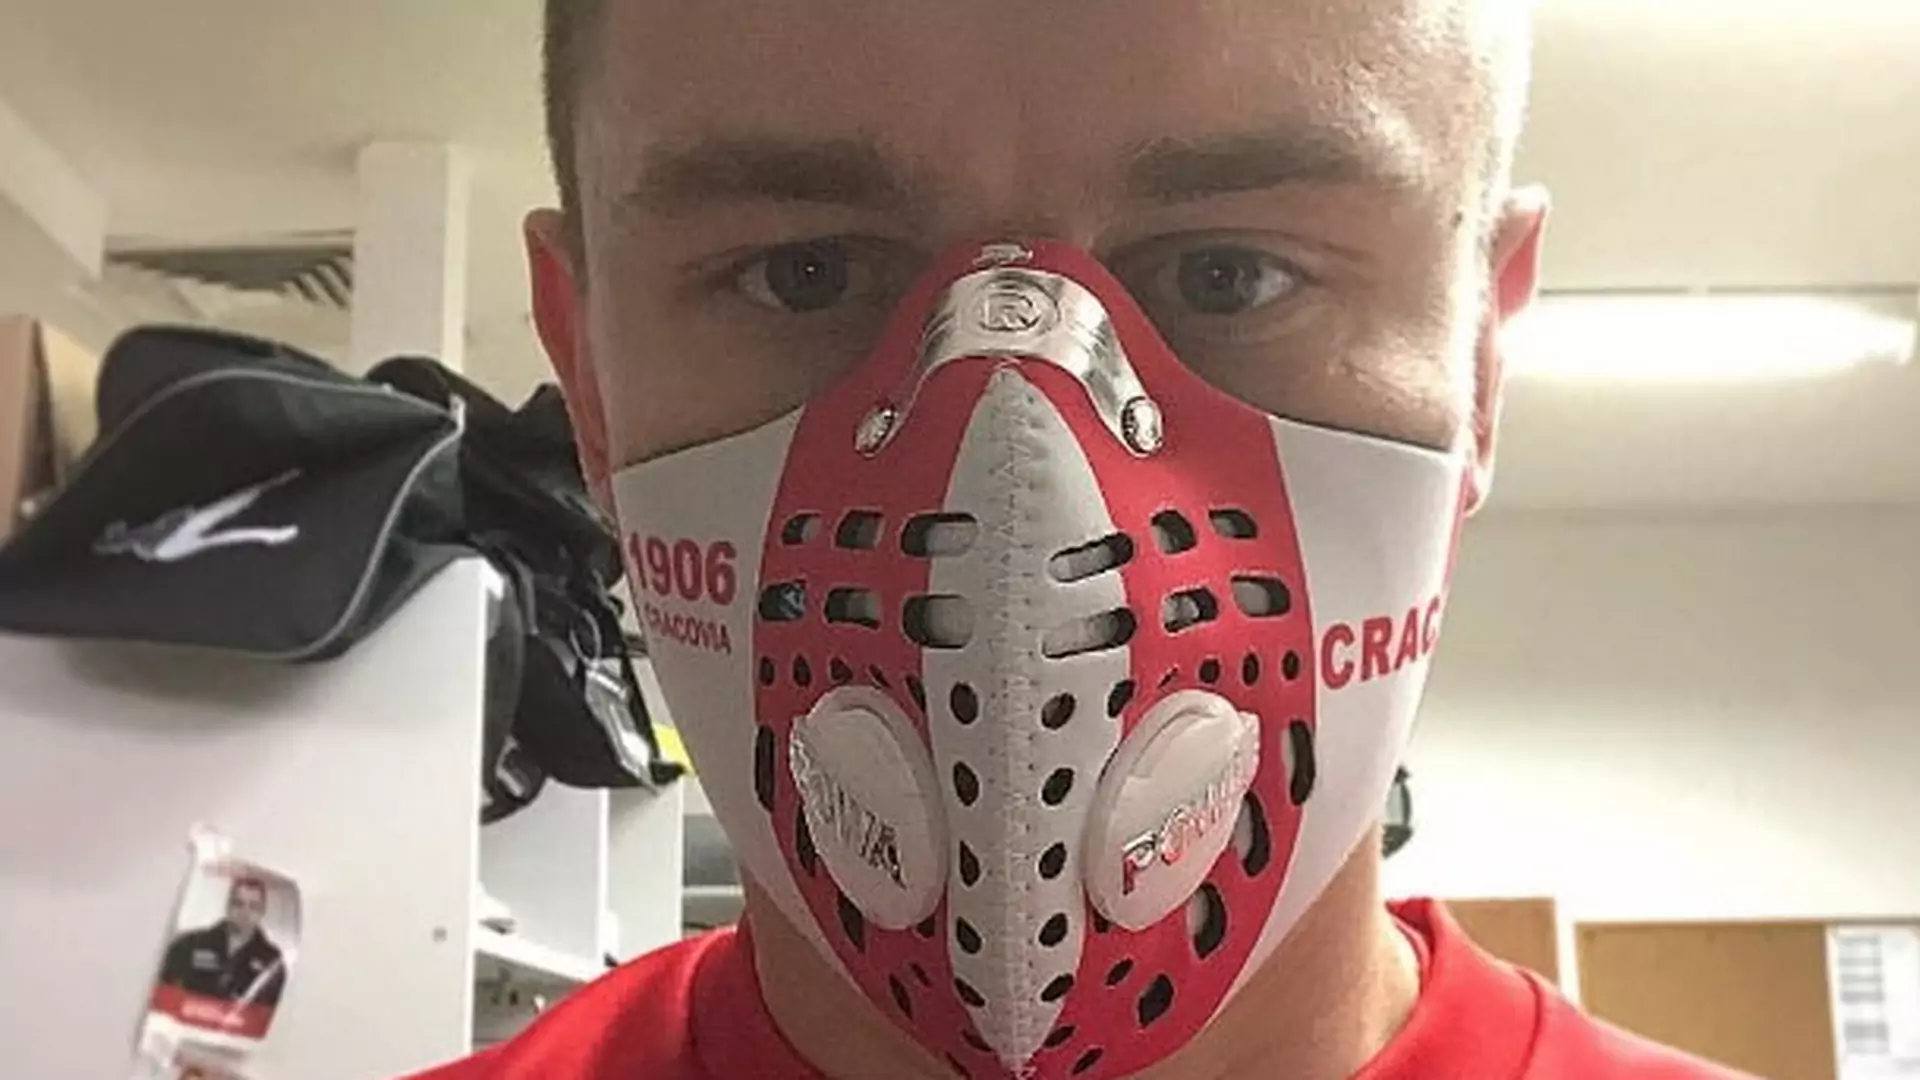 Na meczyk w masce antysmogowej. Polski klub ubiera swoich piłkarzy i fanów w nowy gadżet